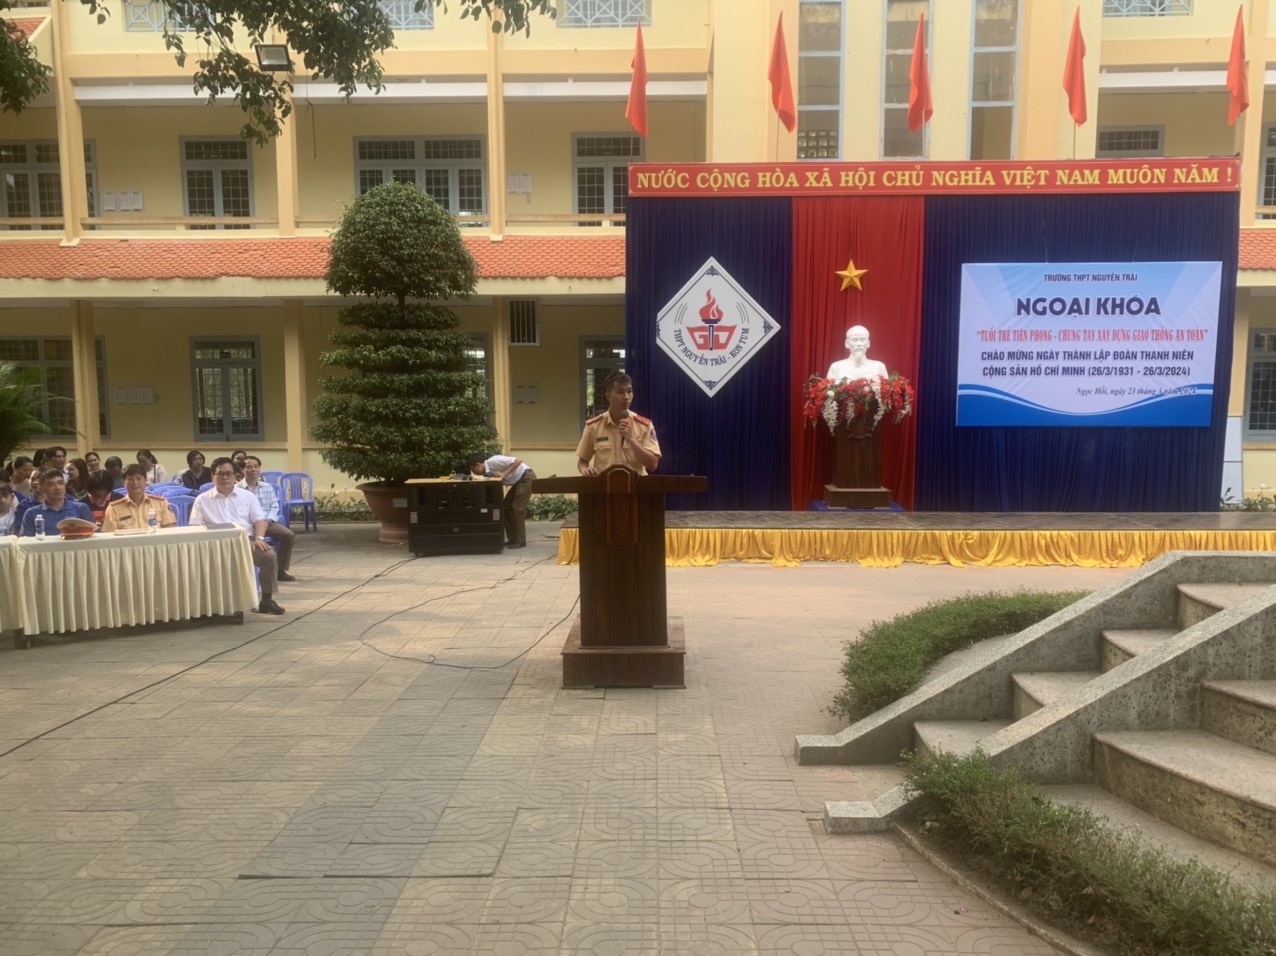 Trường THPT Nguyễn Trãi tổ chức ngoại khoá-Kỷ niệm 93 năm thành lập Đoàn TNCS Hồ Chí Minh (26/3/1931 - 26/3/2024)